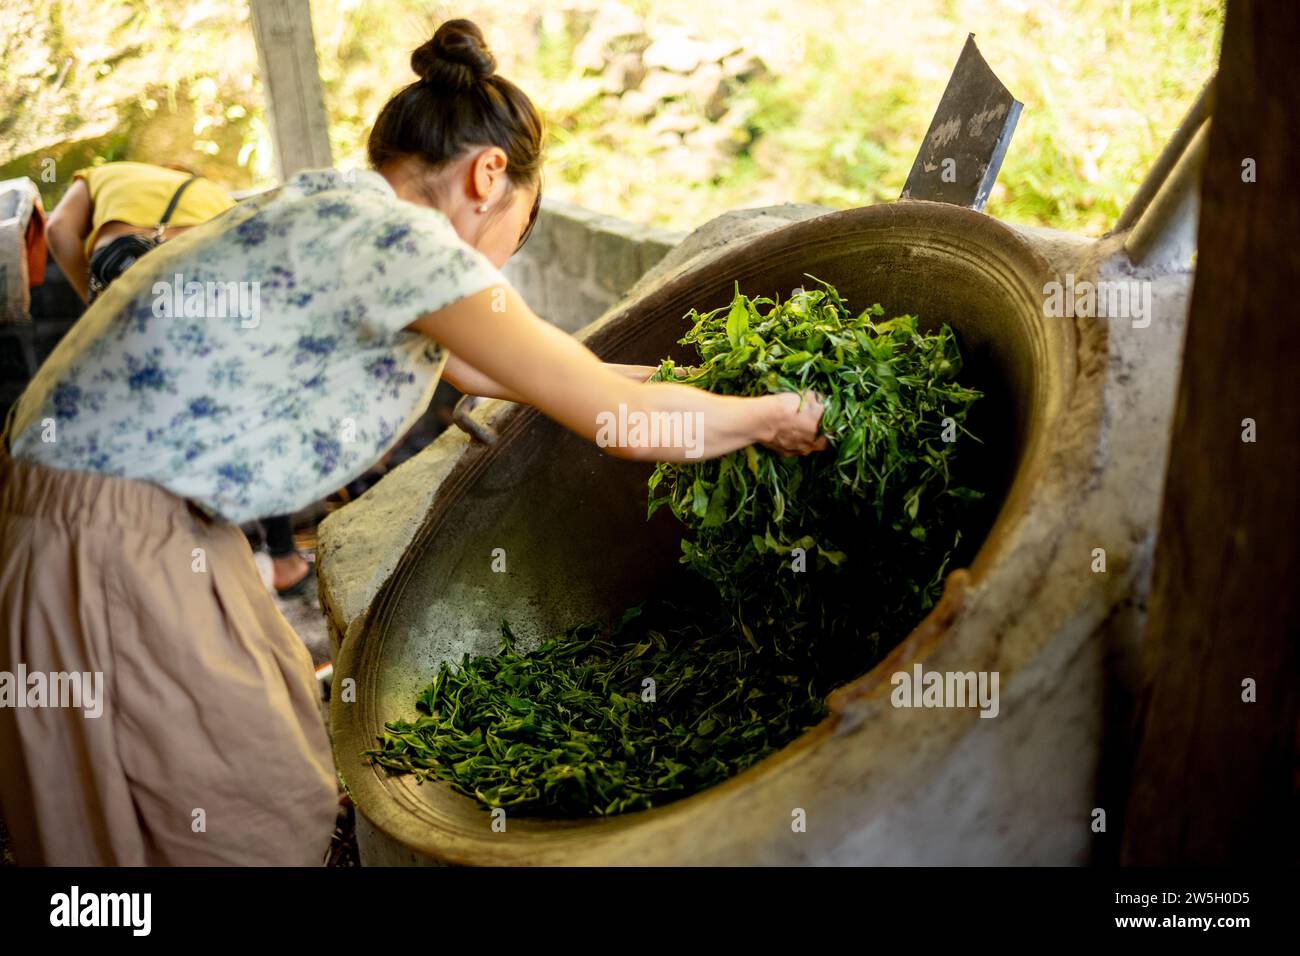 Preparazione del tè - ha Giang - Vietnam Foto Stock